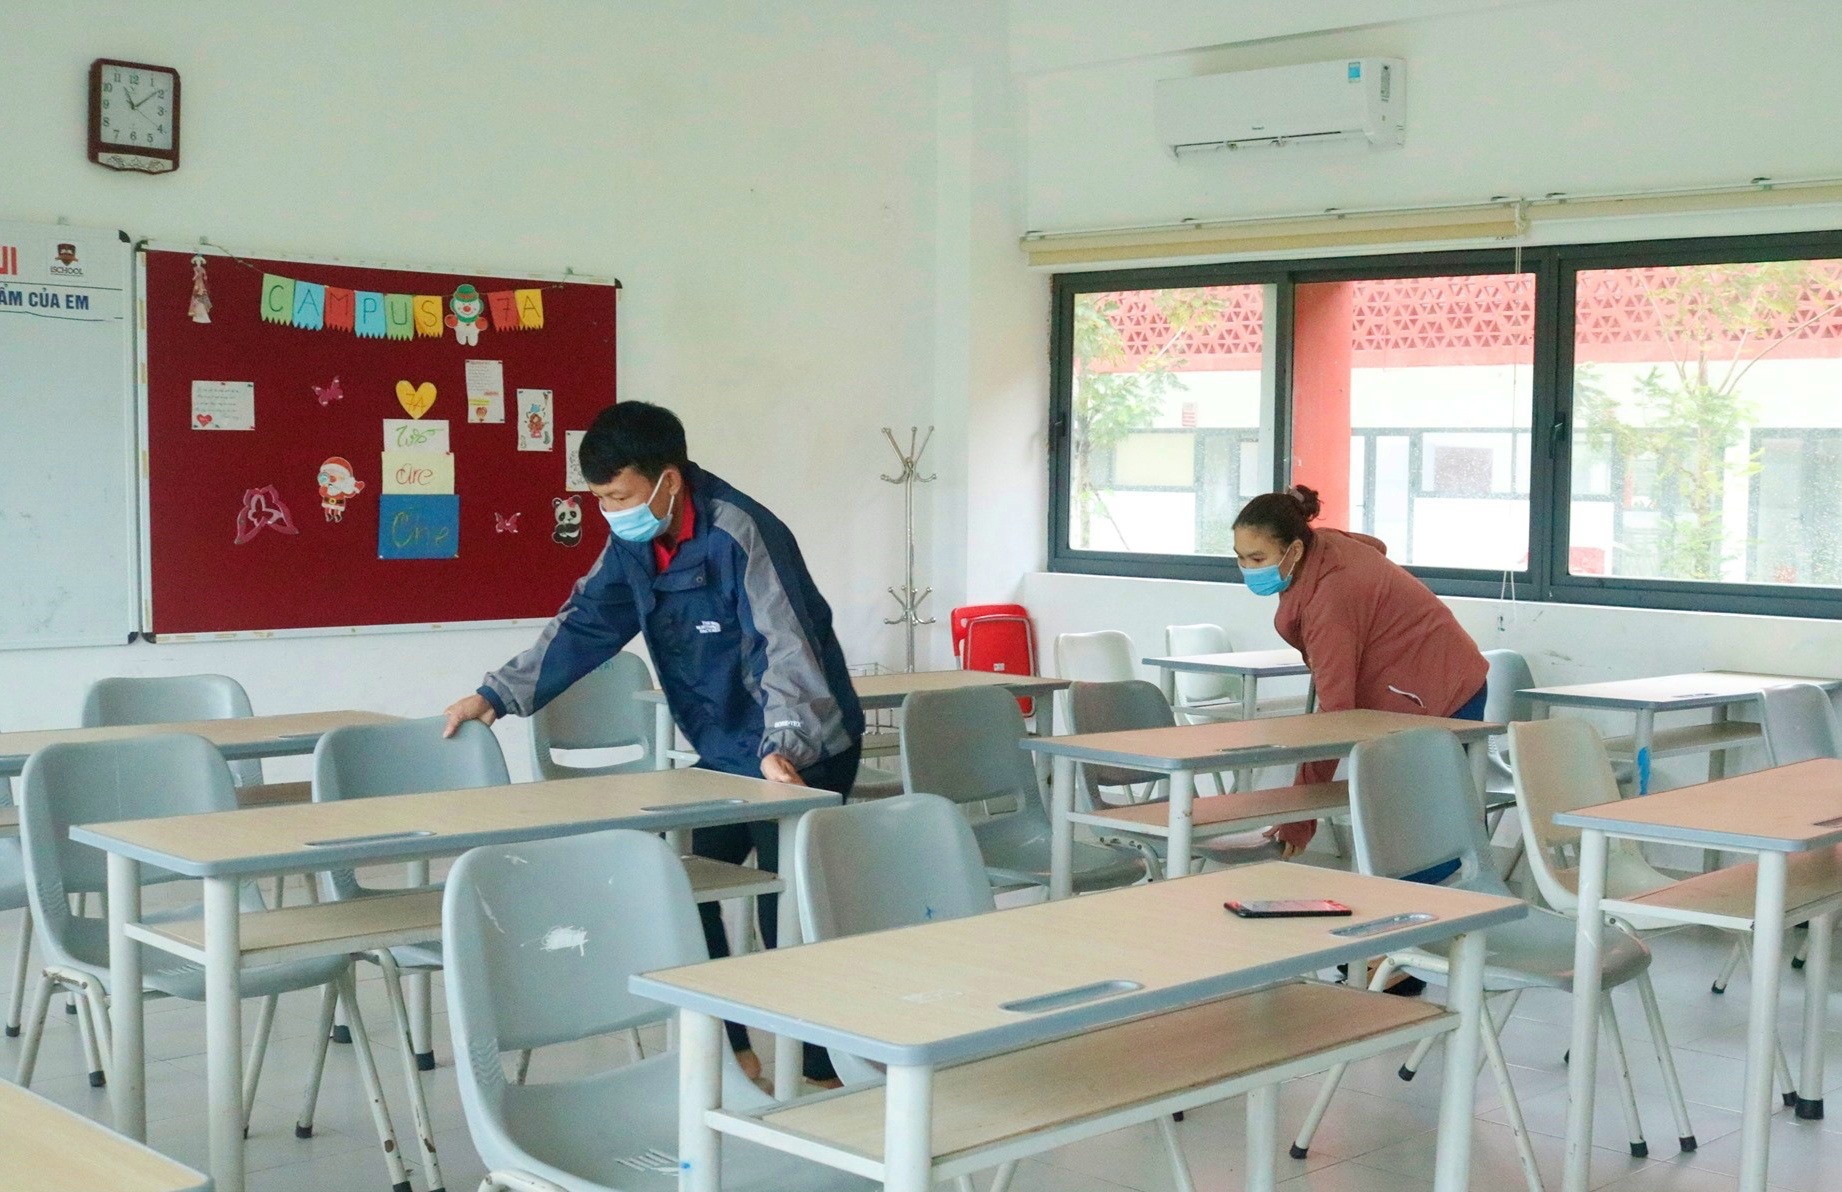 Cán bộ, giáo viên, nhân viên Trường Liên cấp Hội nhập Quốc tế iSchool Quảng Trị dọn dẹp vệ sinh để chuẩn bị đón học sinh - Ảnh: iSchool QT